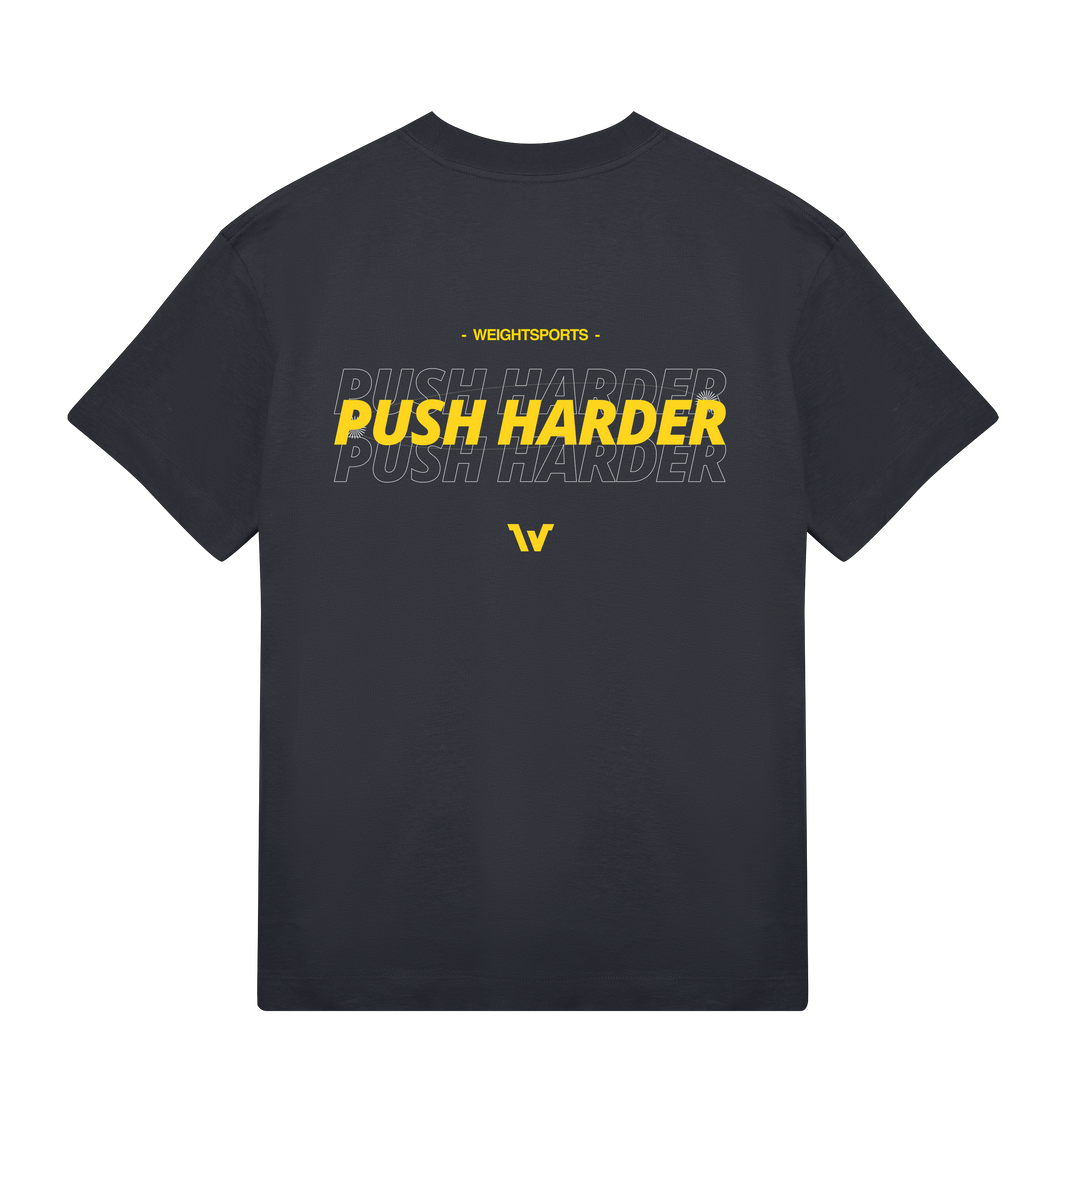 Oversized Push harder T-shirt